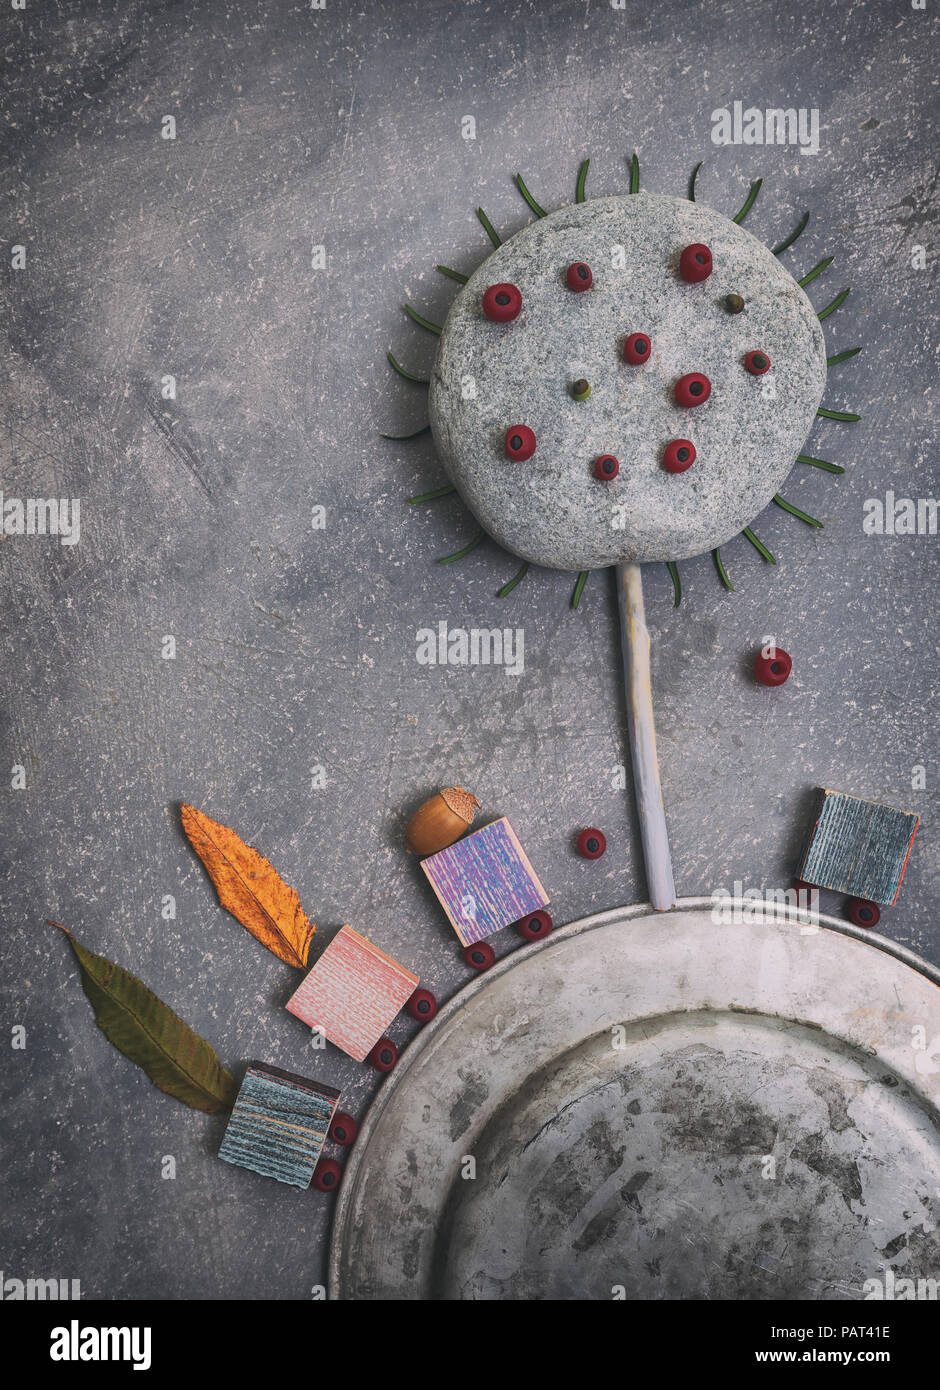 Kreative herbstliche Arrangement aus verschiedenen Objekten: Blätter, Eicheln, runden Stein und Beeren auf Grau scratchy Hintergrund Stockfoto